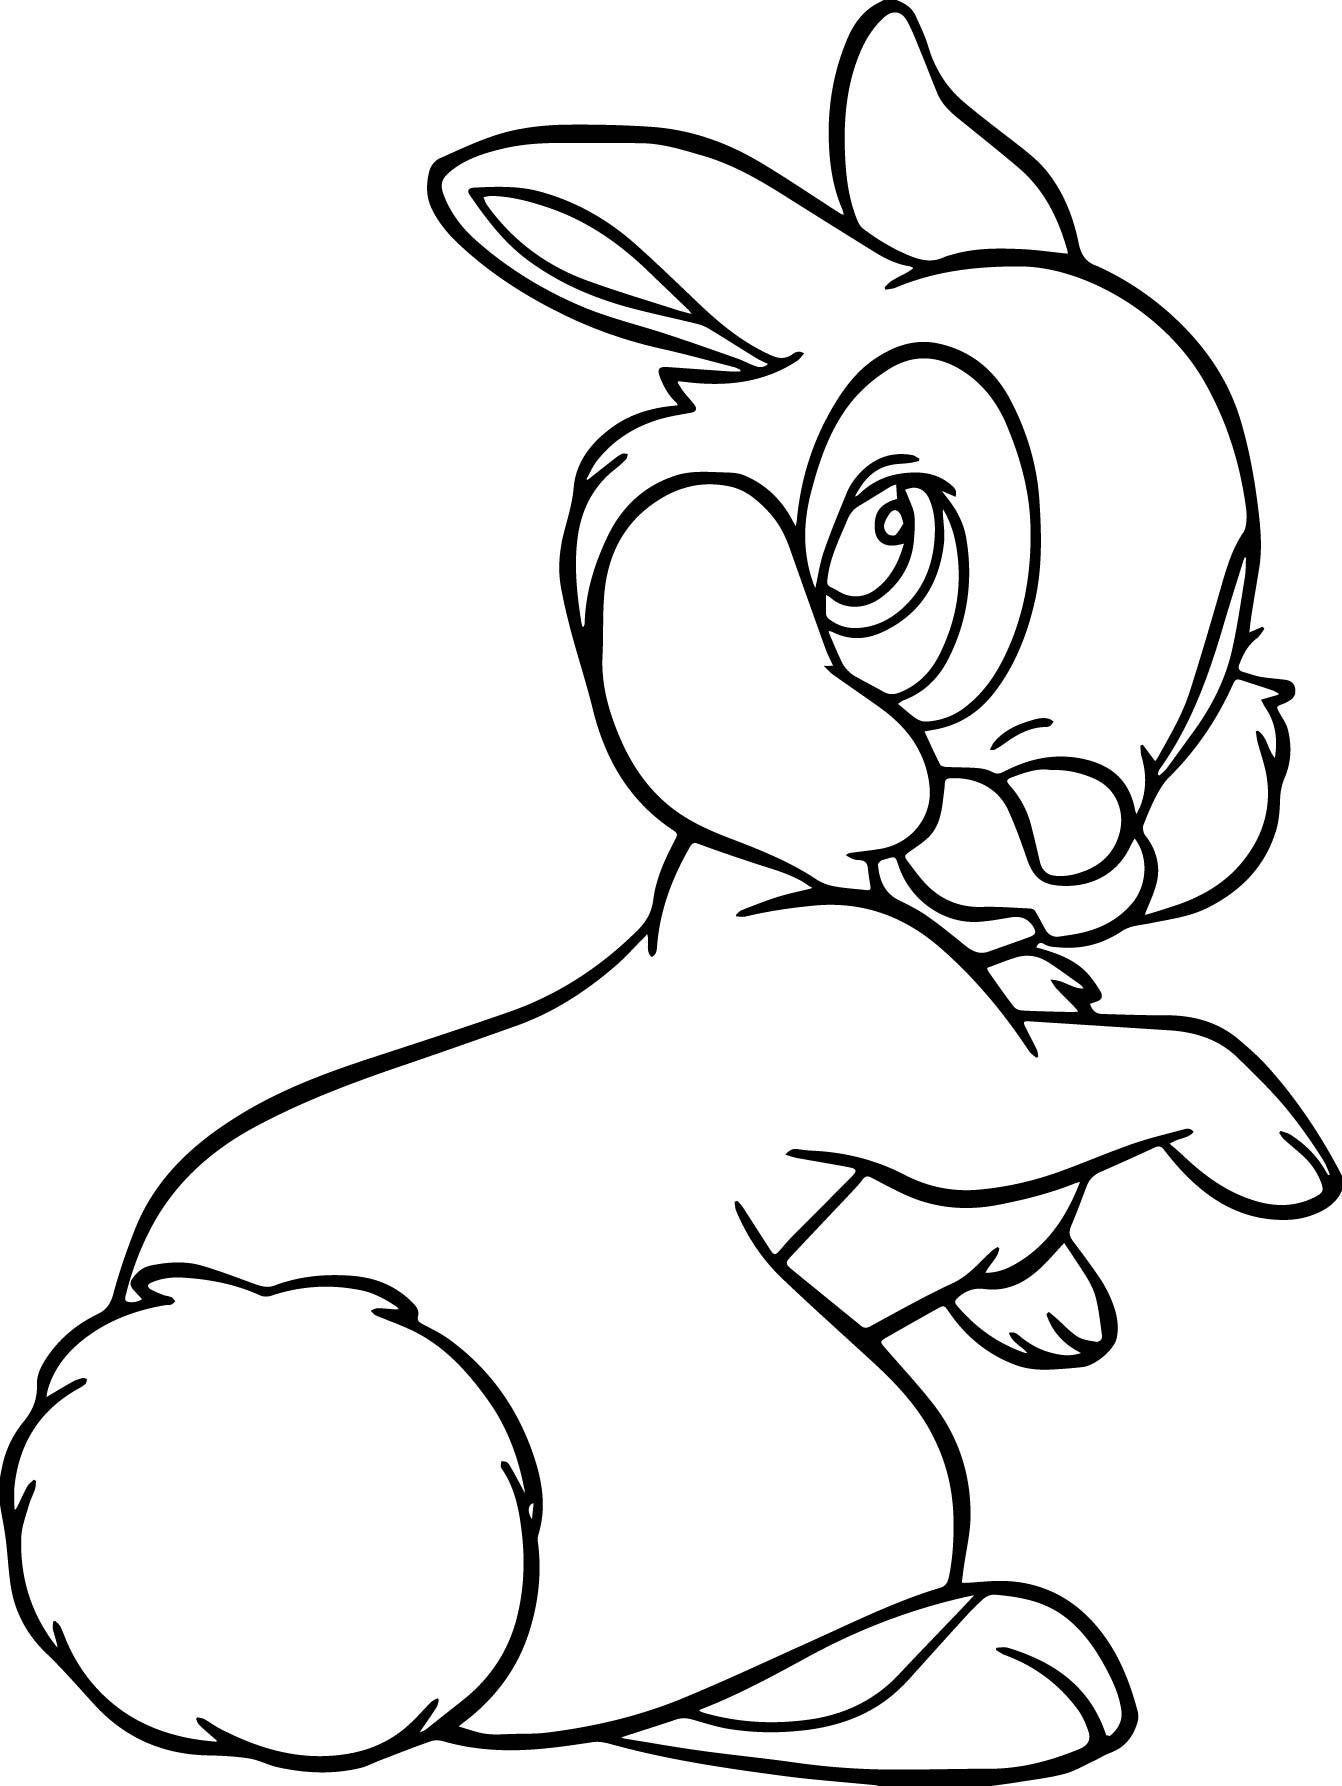 Tranh tô màu chú thỏ quay lưng đáng yêu